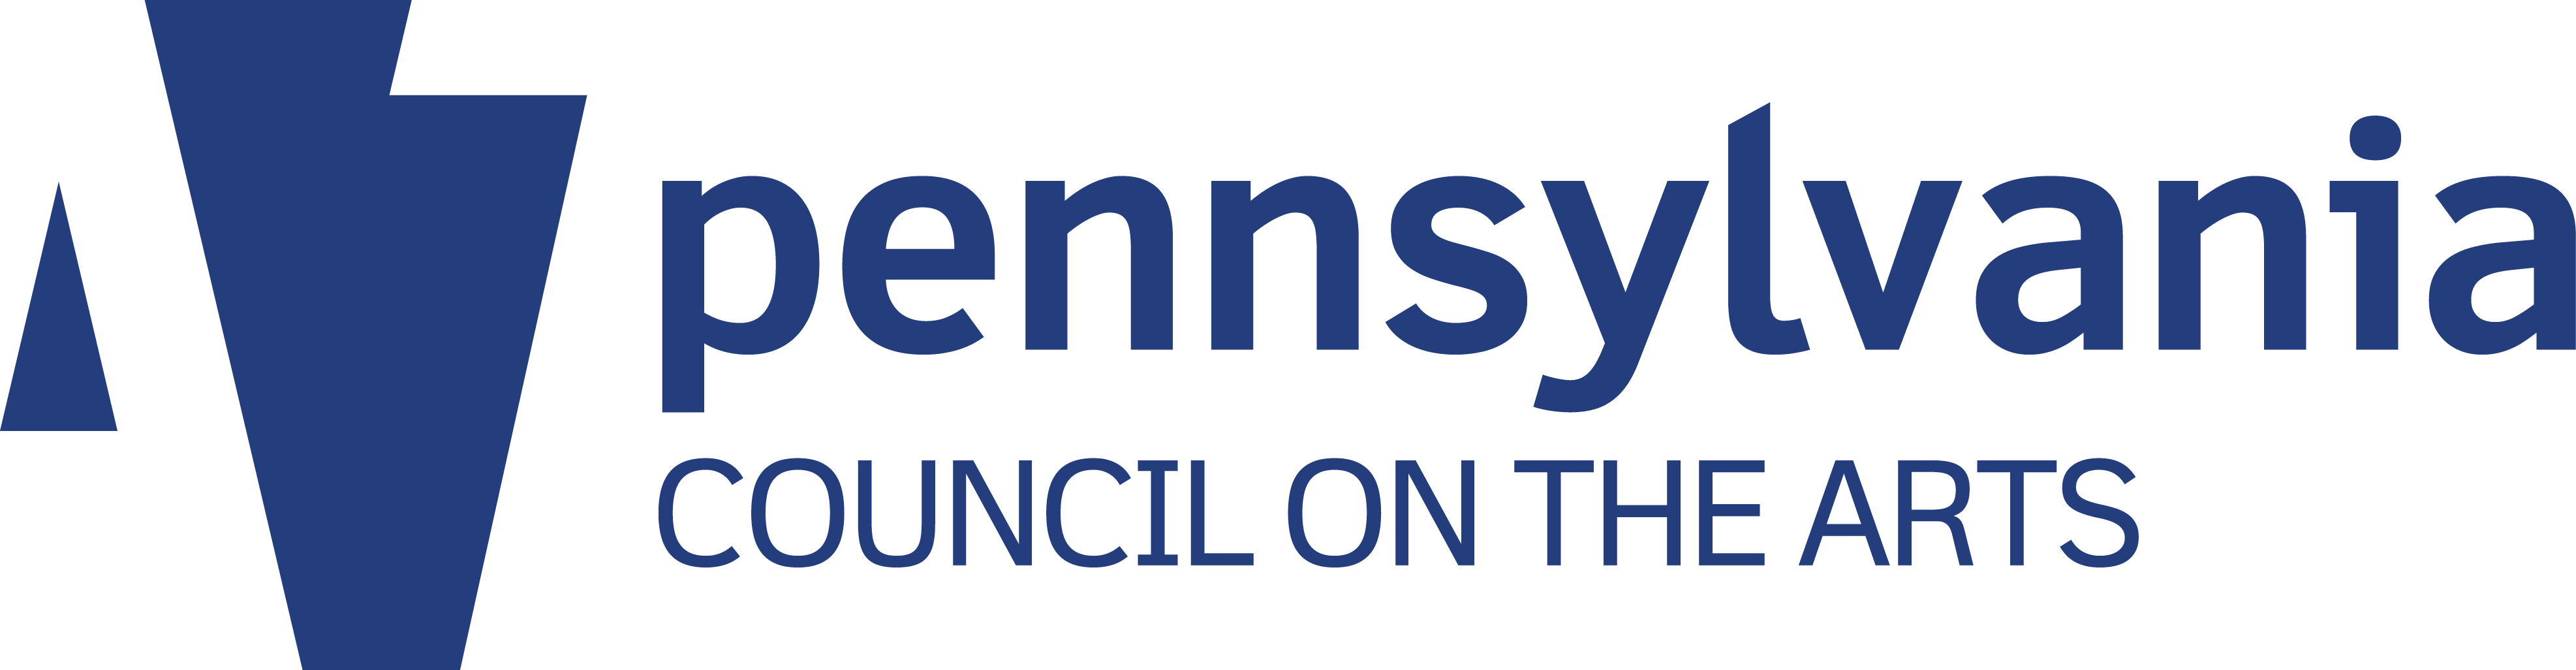 Pennsylvania Council on the Arts logo